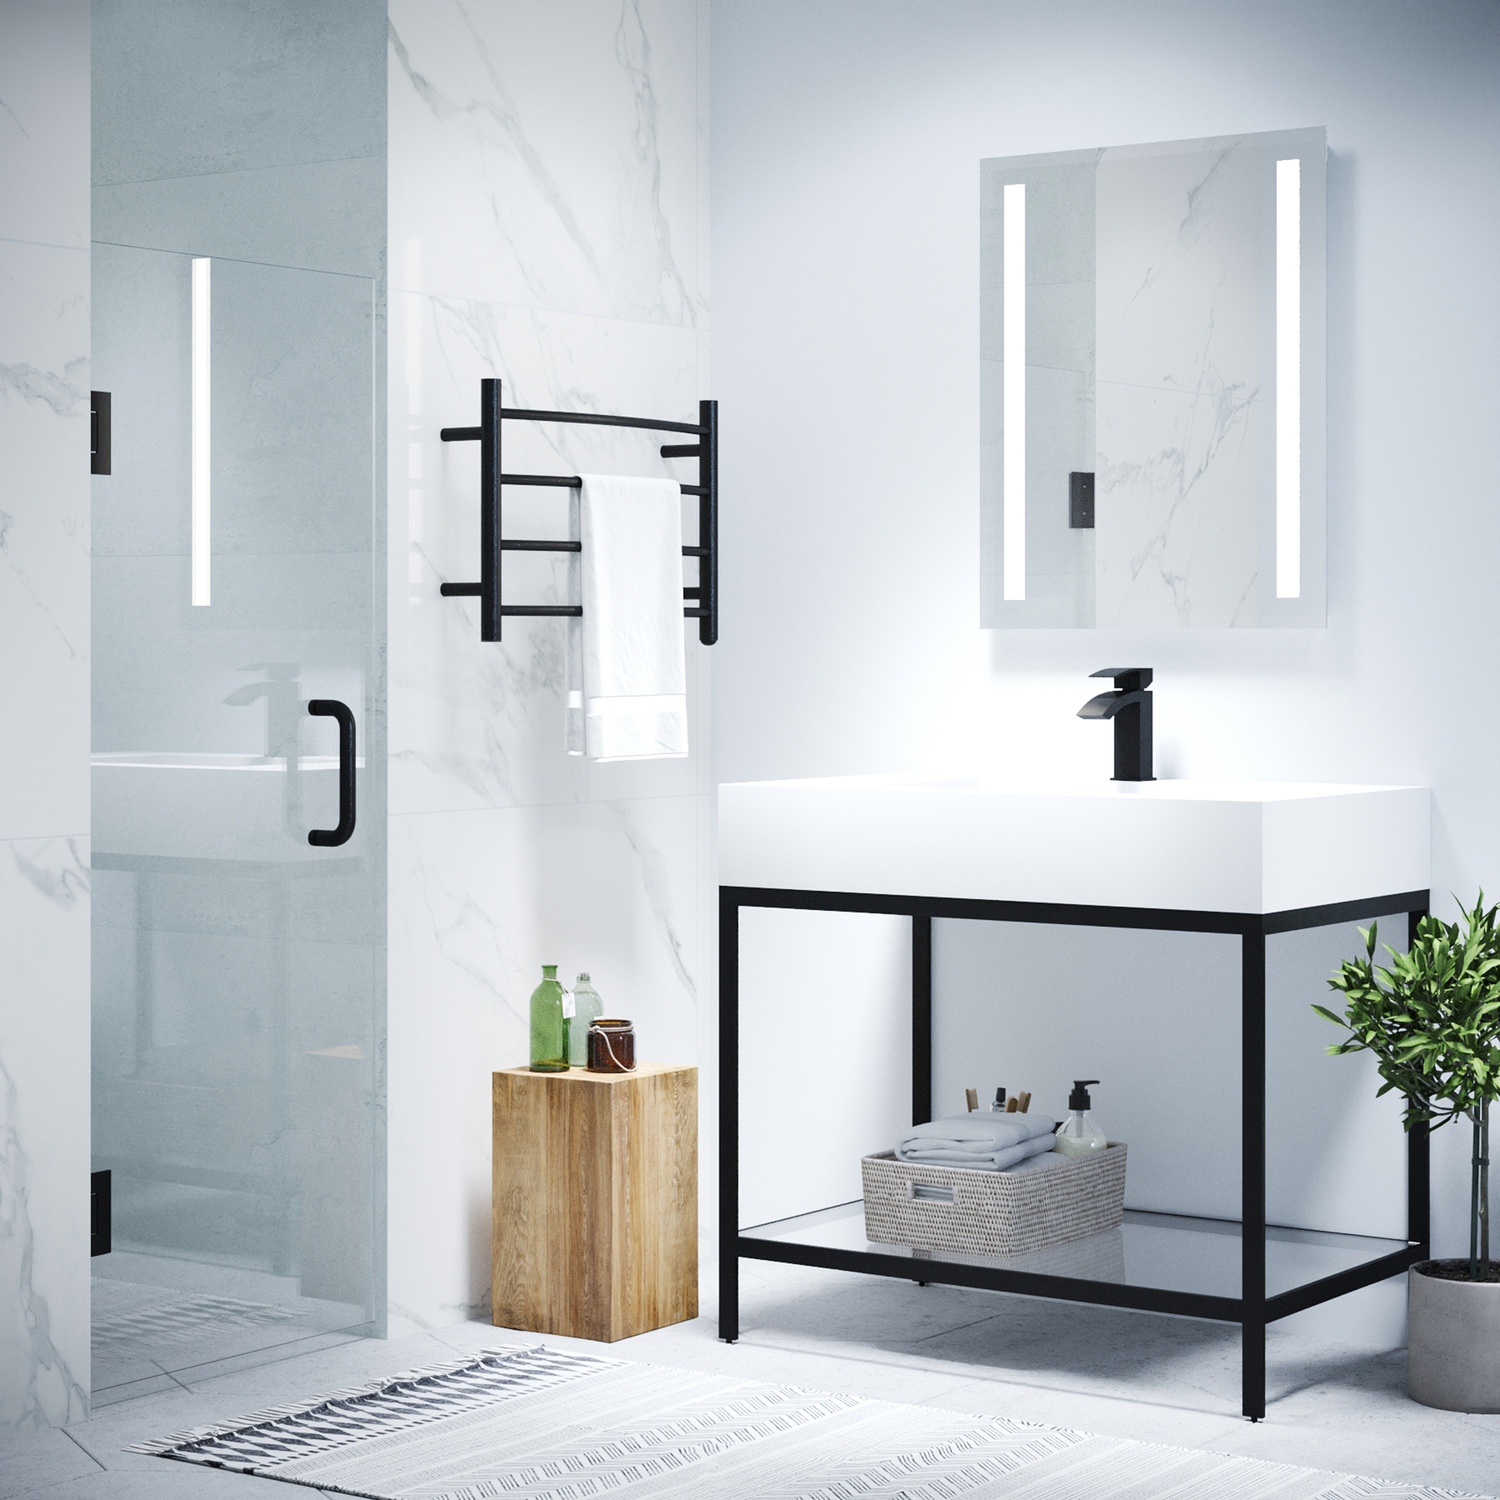 swinging frameless glass shower doors for tubs Anzzi SHOWER - Shower Doors - Hinged Black